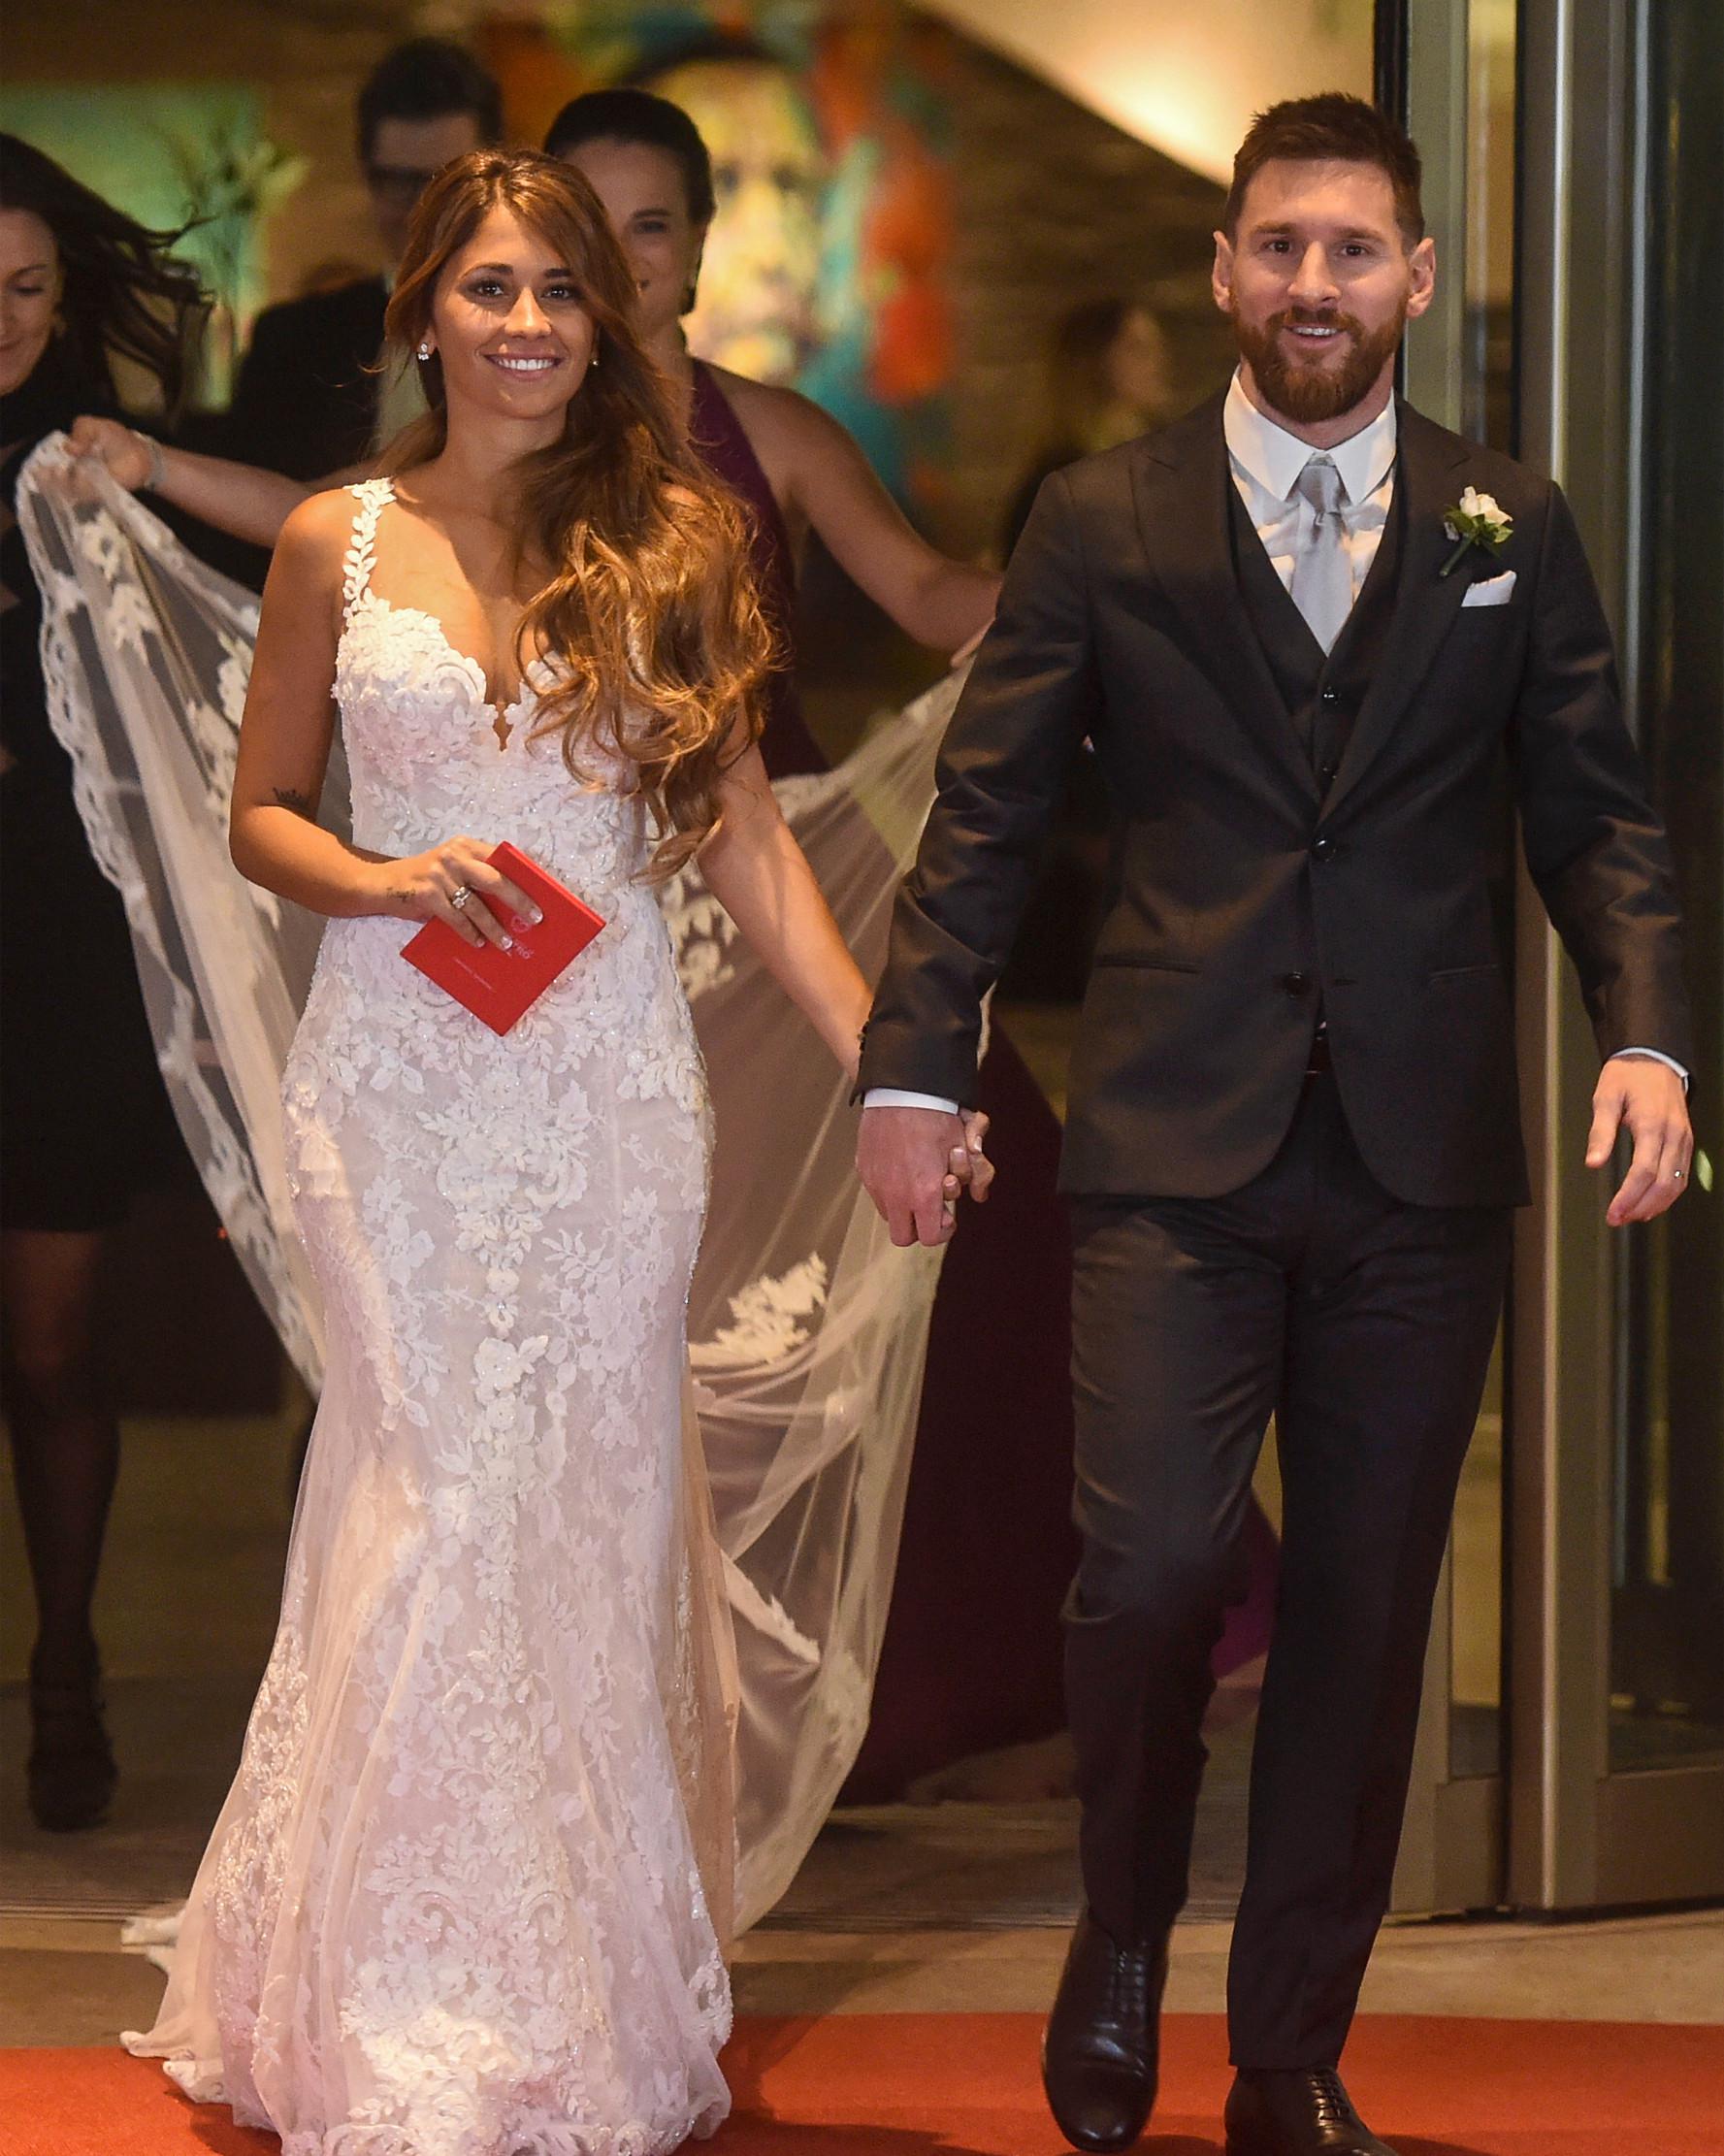 Bintang sepak bola, Lionel Messi berjalan di karpet merah bersama istrinya Antonella Roccuzzo di Rosario, provinsi Santa Fe, Argentina (30/6). Messi menikahi Antonella yang dikenalnya sejak usia 5 tahun. (AFP Photo/Eitan Abramovich)